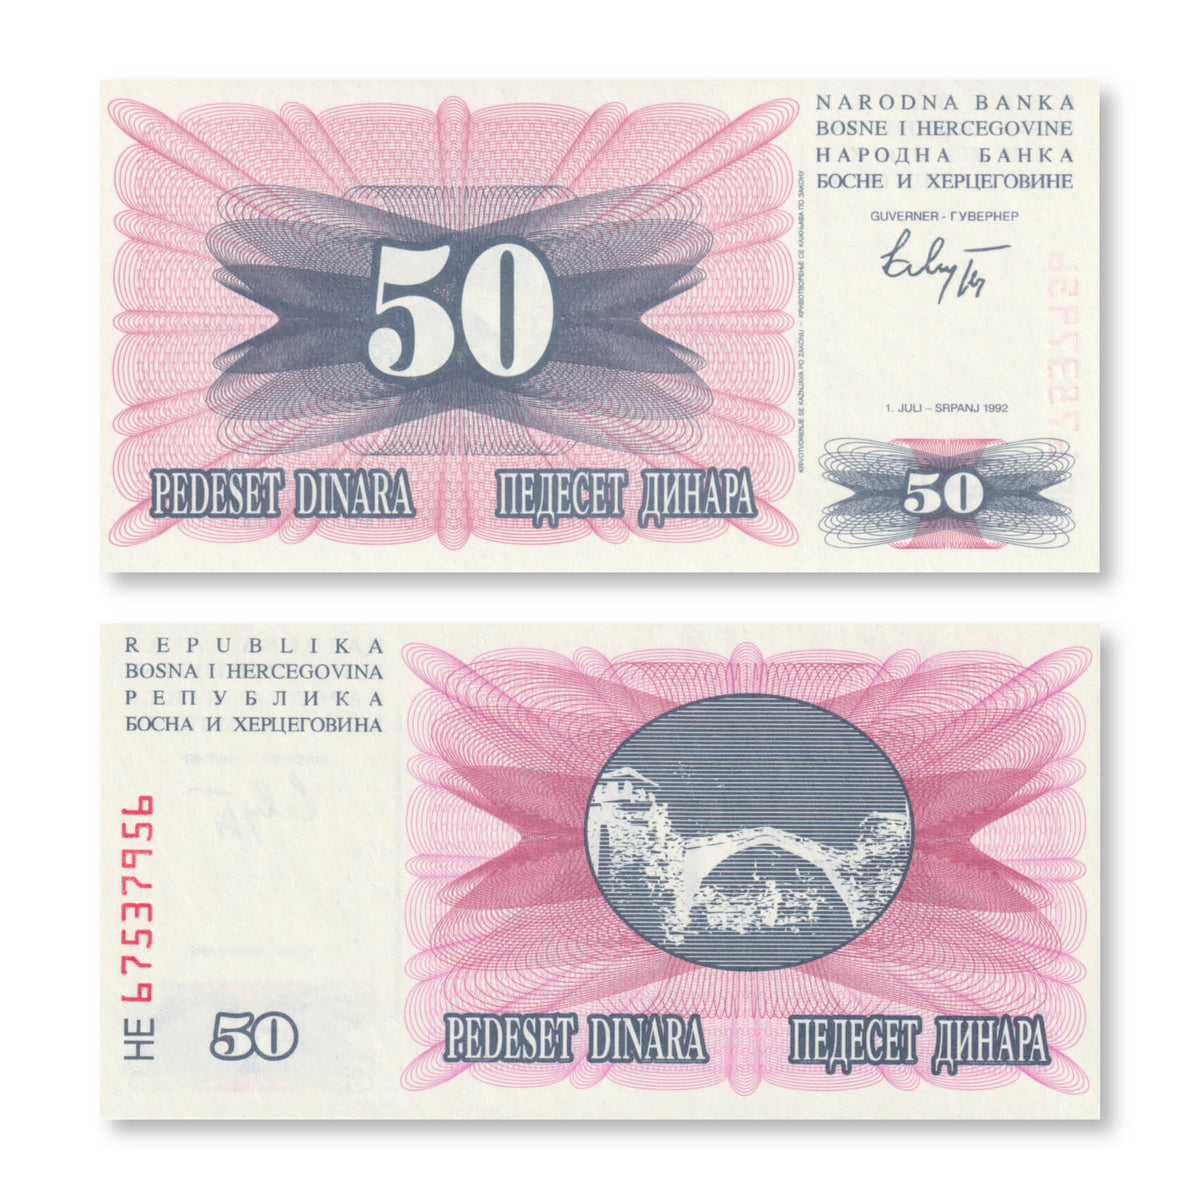 Bosnia 50 Dinars, 1992, B115a, P12a, UNC - Robert's World Money - World Banknotes